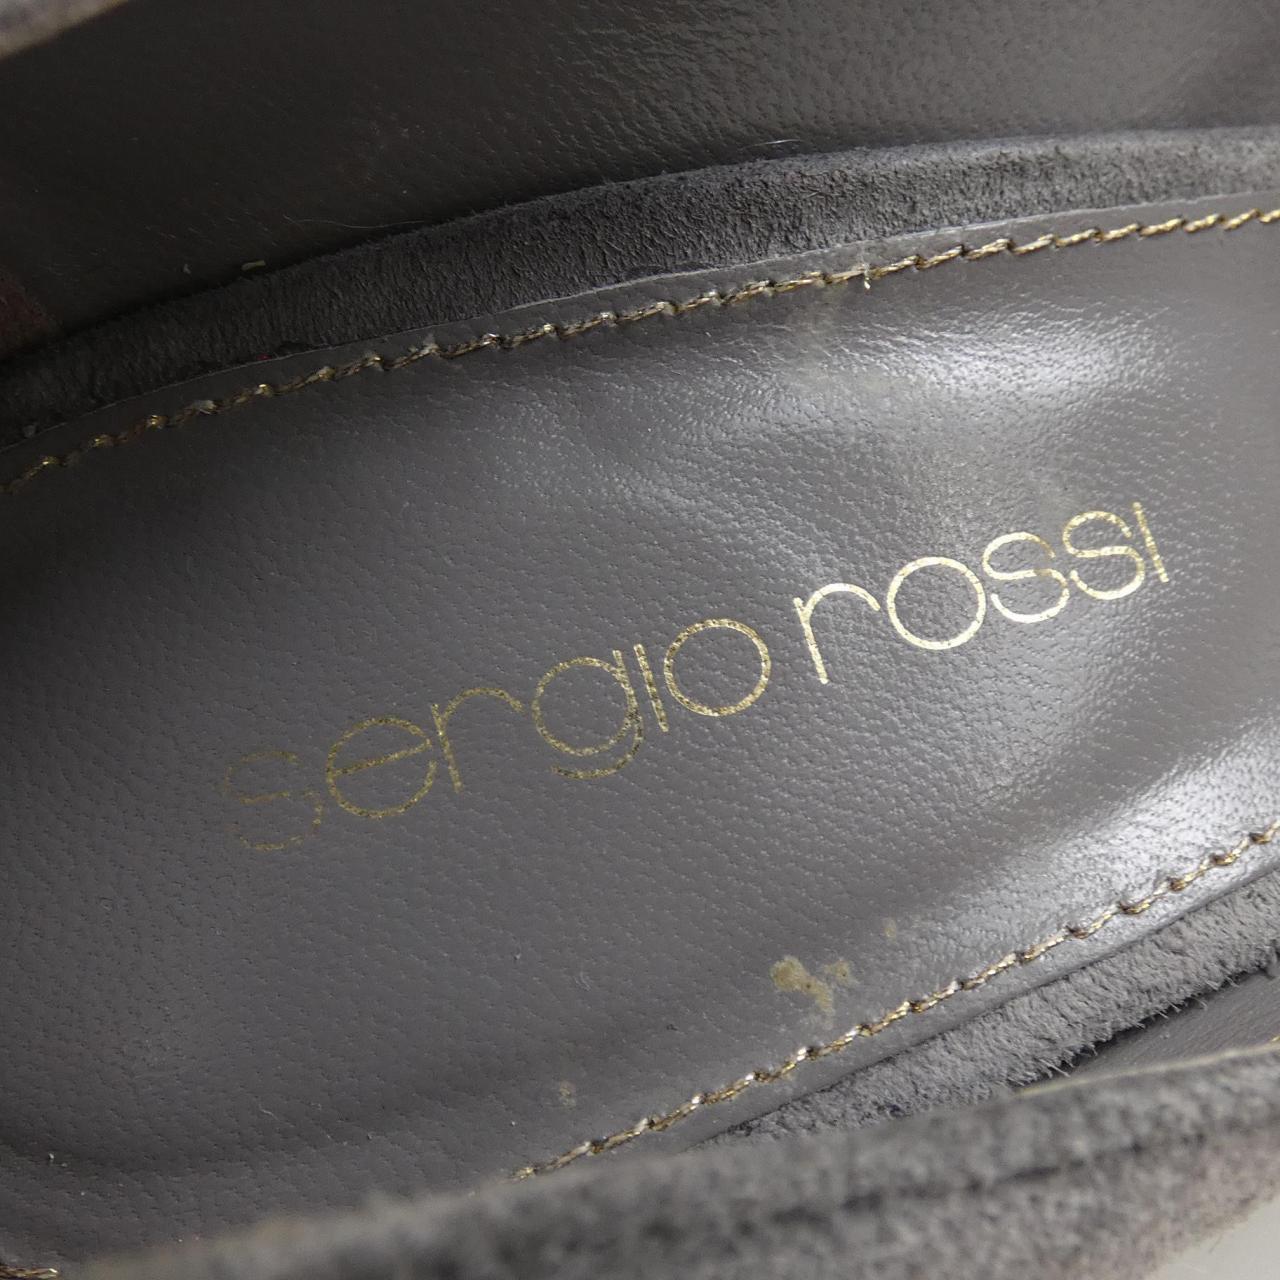 sergio rossi ·罗西 塞尔吉奥·罗西 高跟鞋